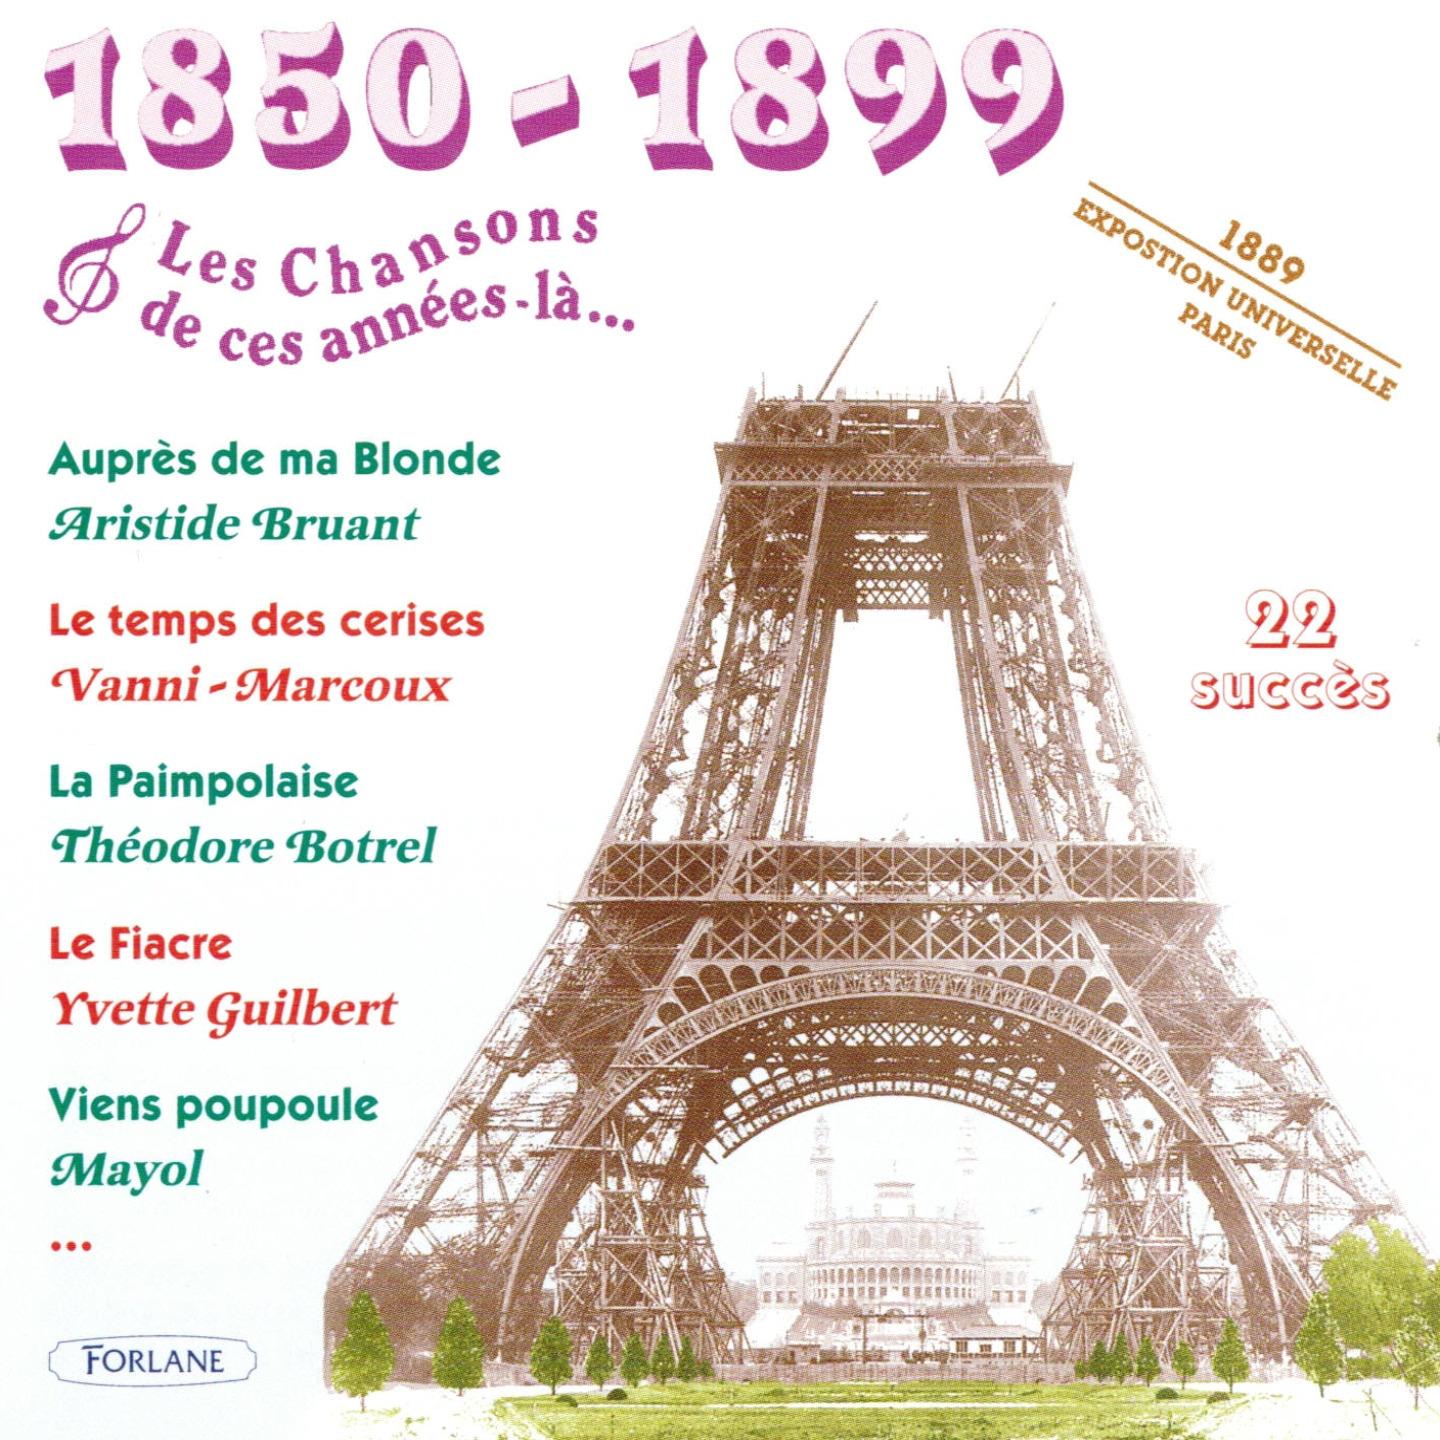 18501899 : Les chansons de cette anne ela Exposition Universelle Paris 1889